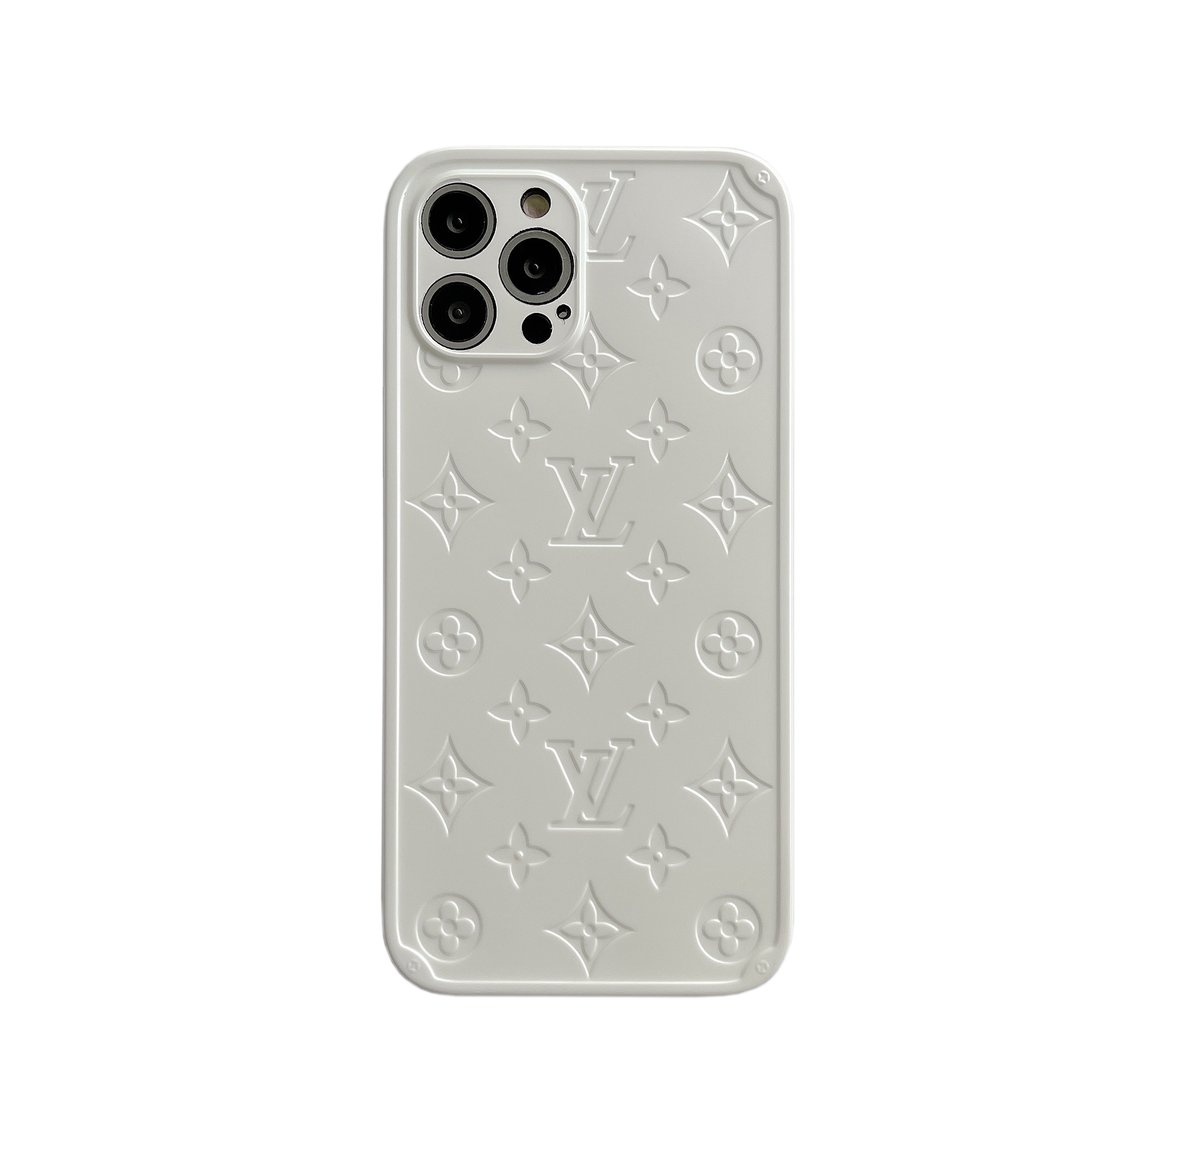 IPhone 13 Case - Louis Vuitton Black